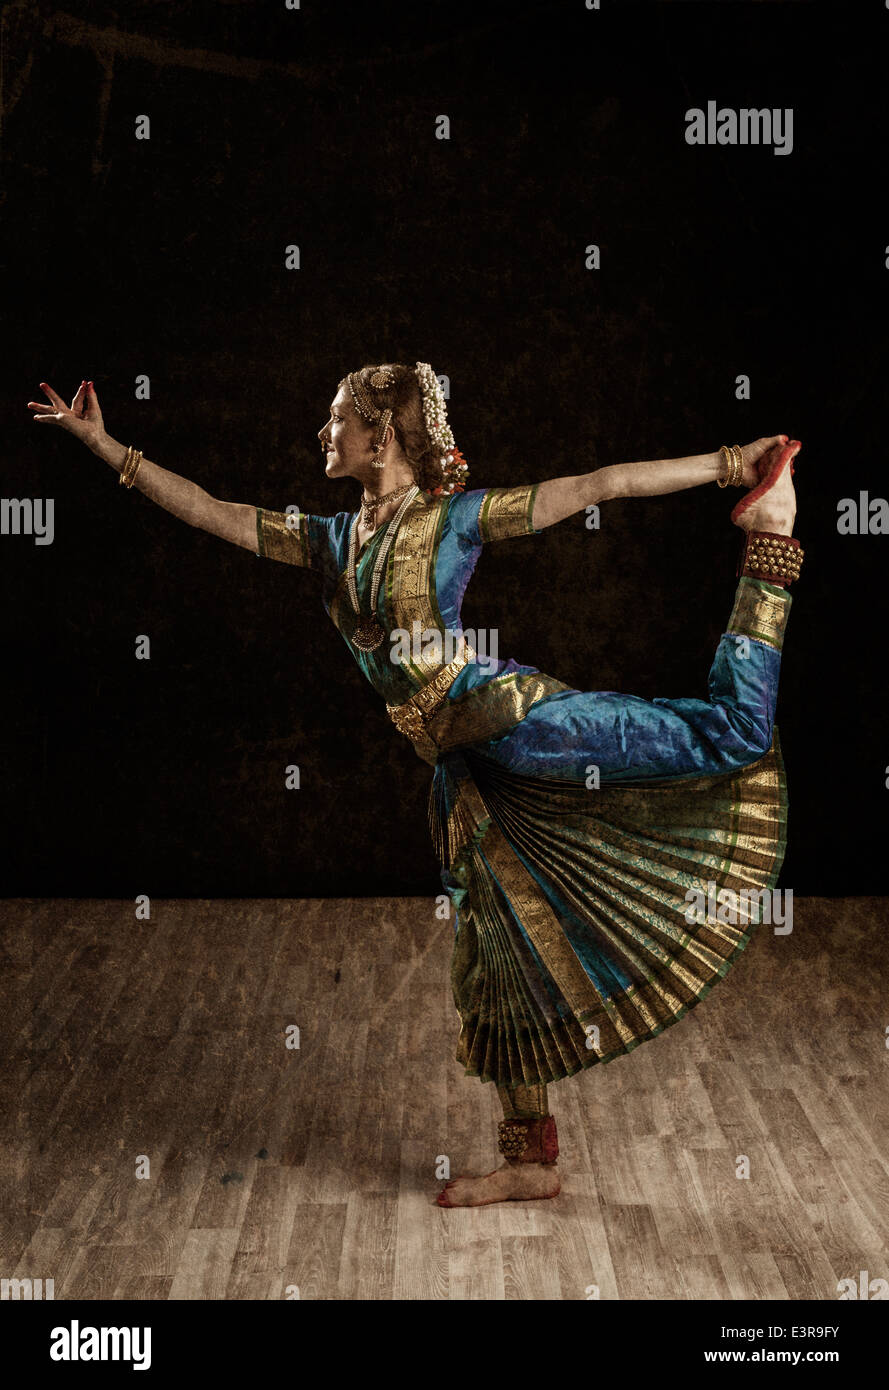 Imagen de estilo retro vintage de mujer hermosa joven bailarina exponente de la danza clásica india Bharatanatyam Foto de stock